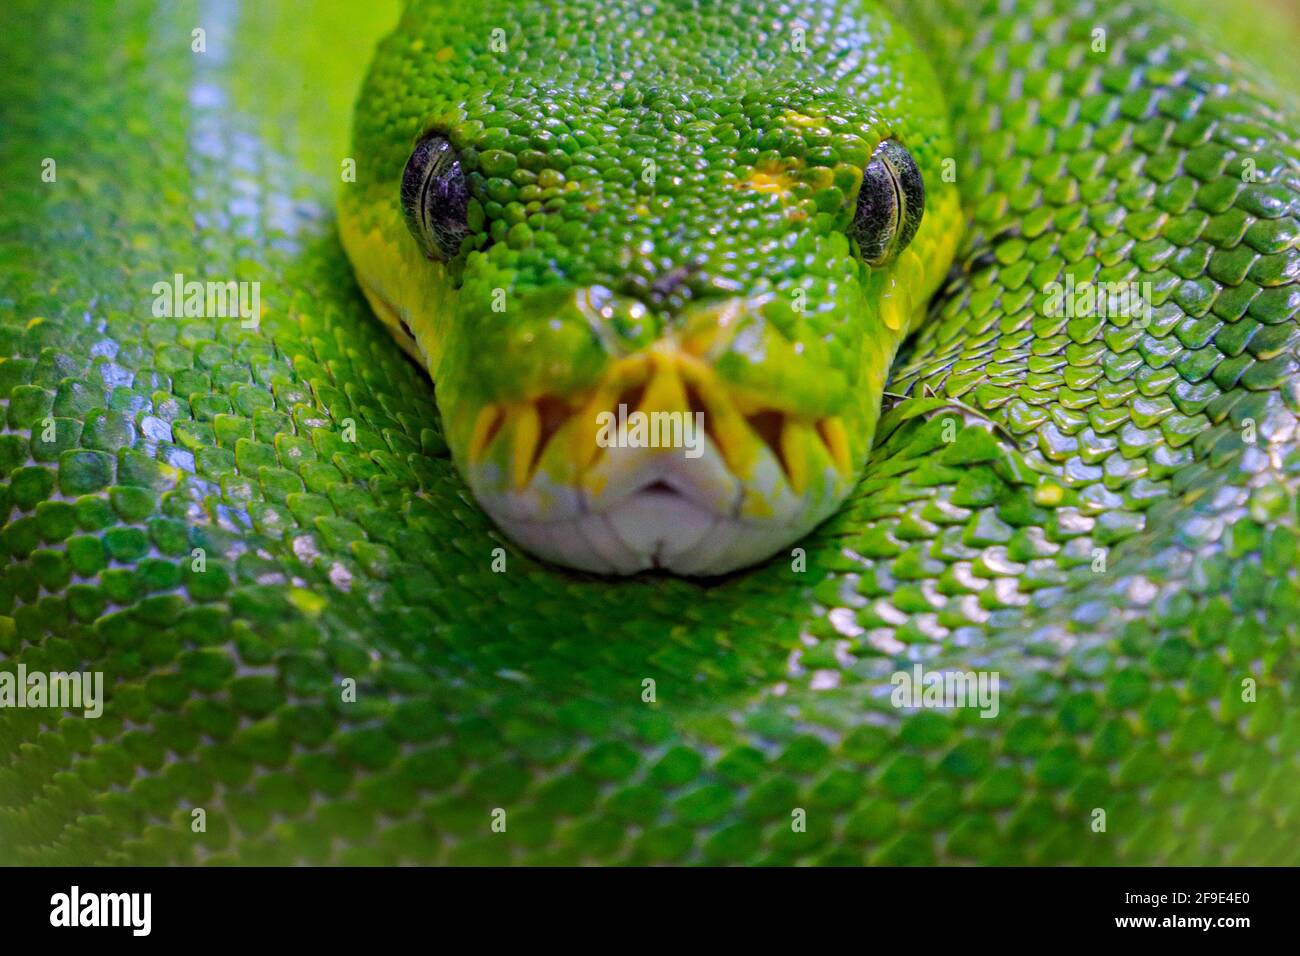 Grüner Baumpython, Morelia viridis, Schlange aus Indonesien, Neuguinea. Detail Kopf Porträt der Schlange, im Wald. Reptil im Waldlebensraum. Wil Stockfoto